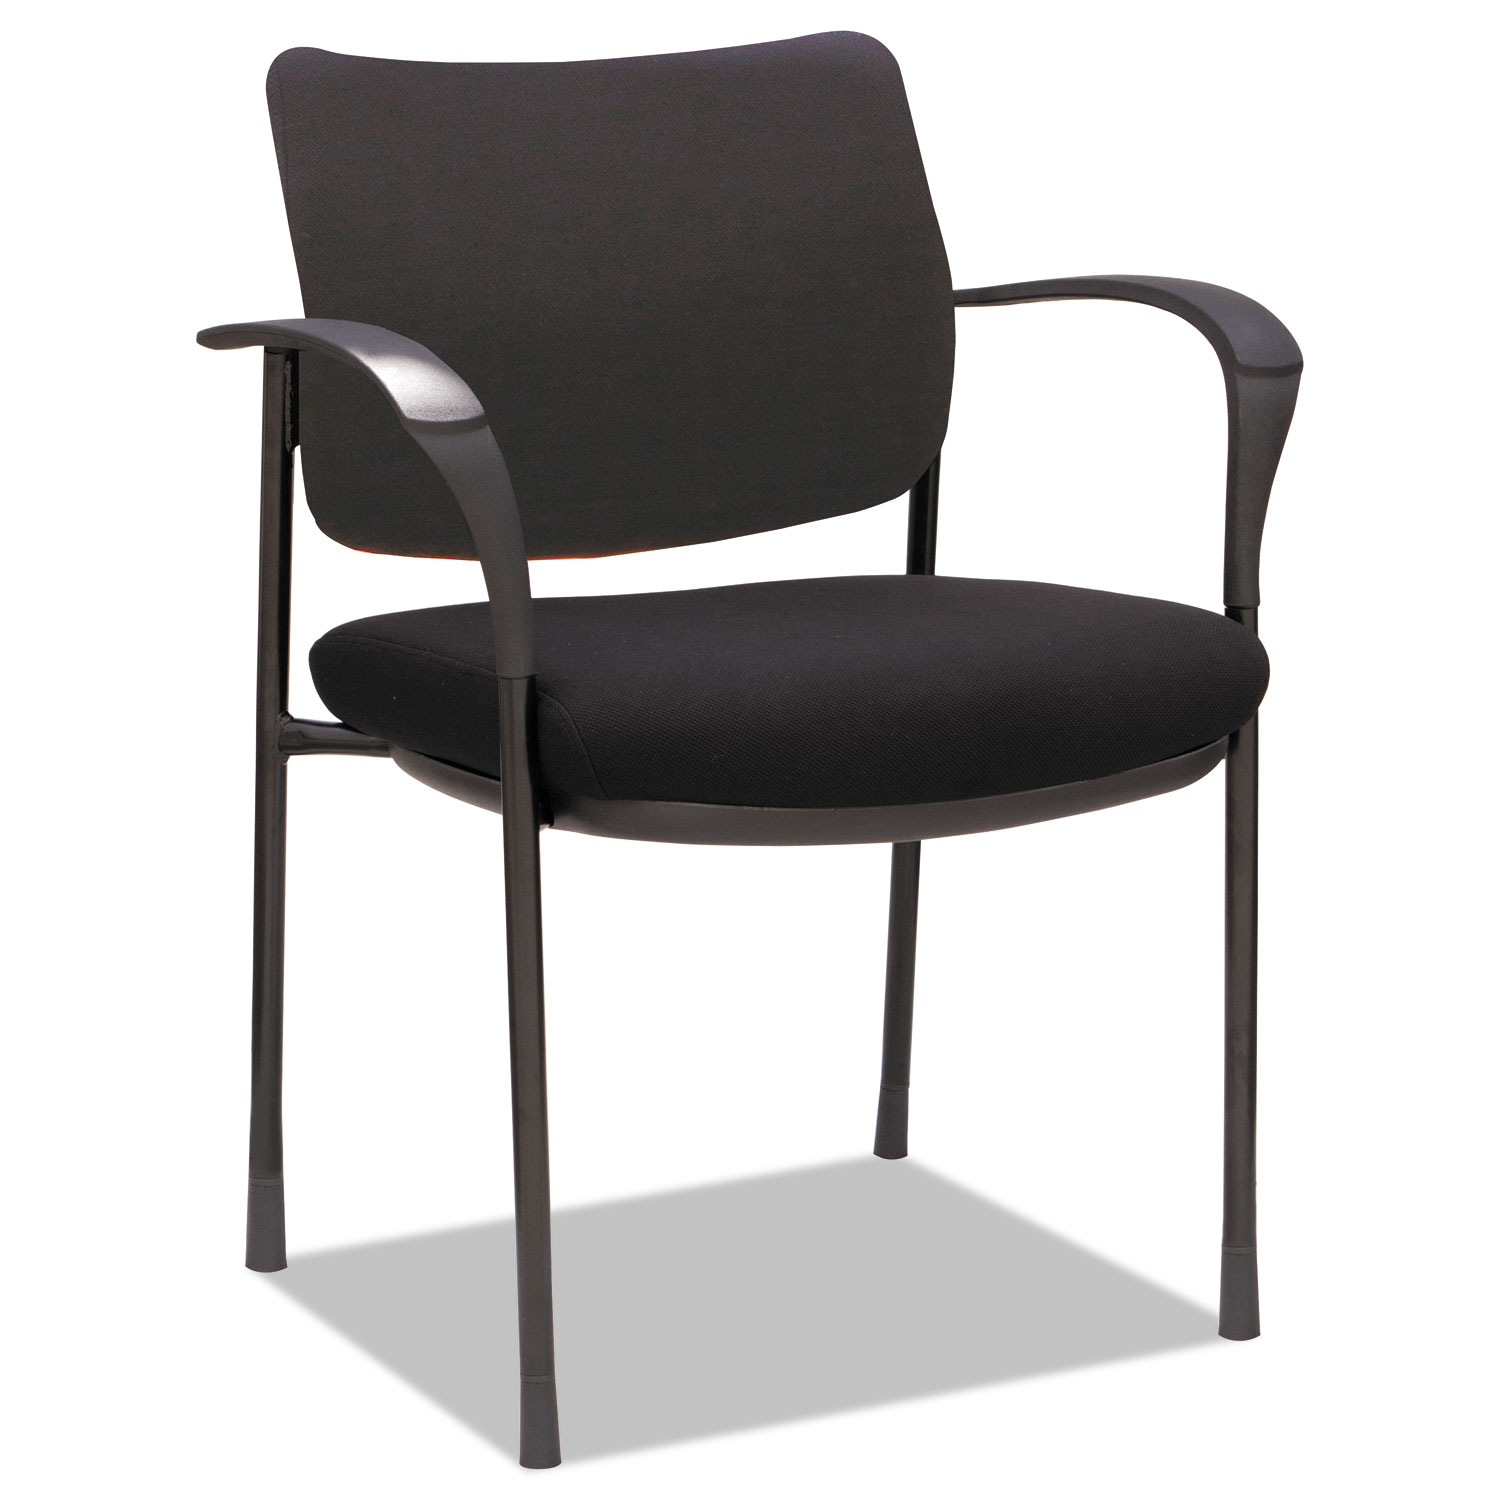  Alera ALEIV4317A Alera IV Series Guest Chairs, 24.80'' x 22.83'' x 32.28'', Black Seat/Black Back, Black Base, 2/Carton (ALEIV4317A) 